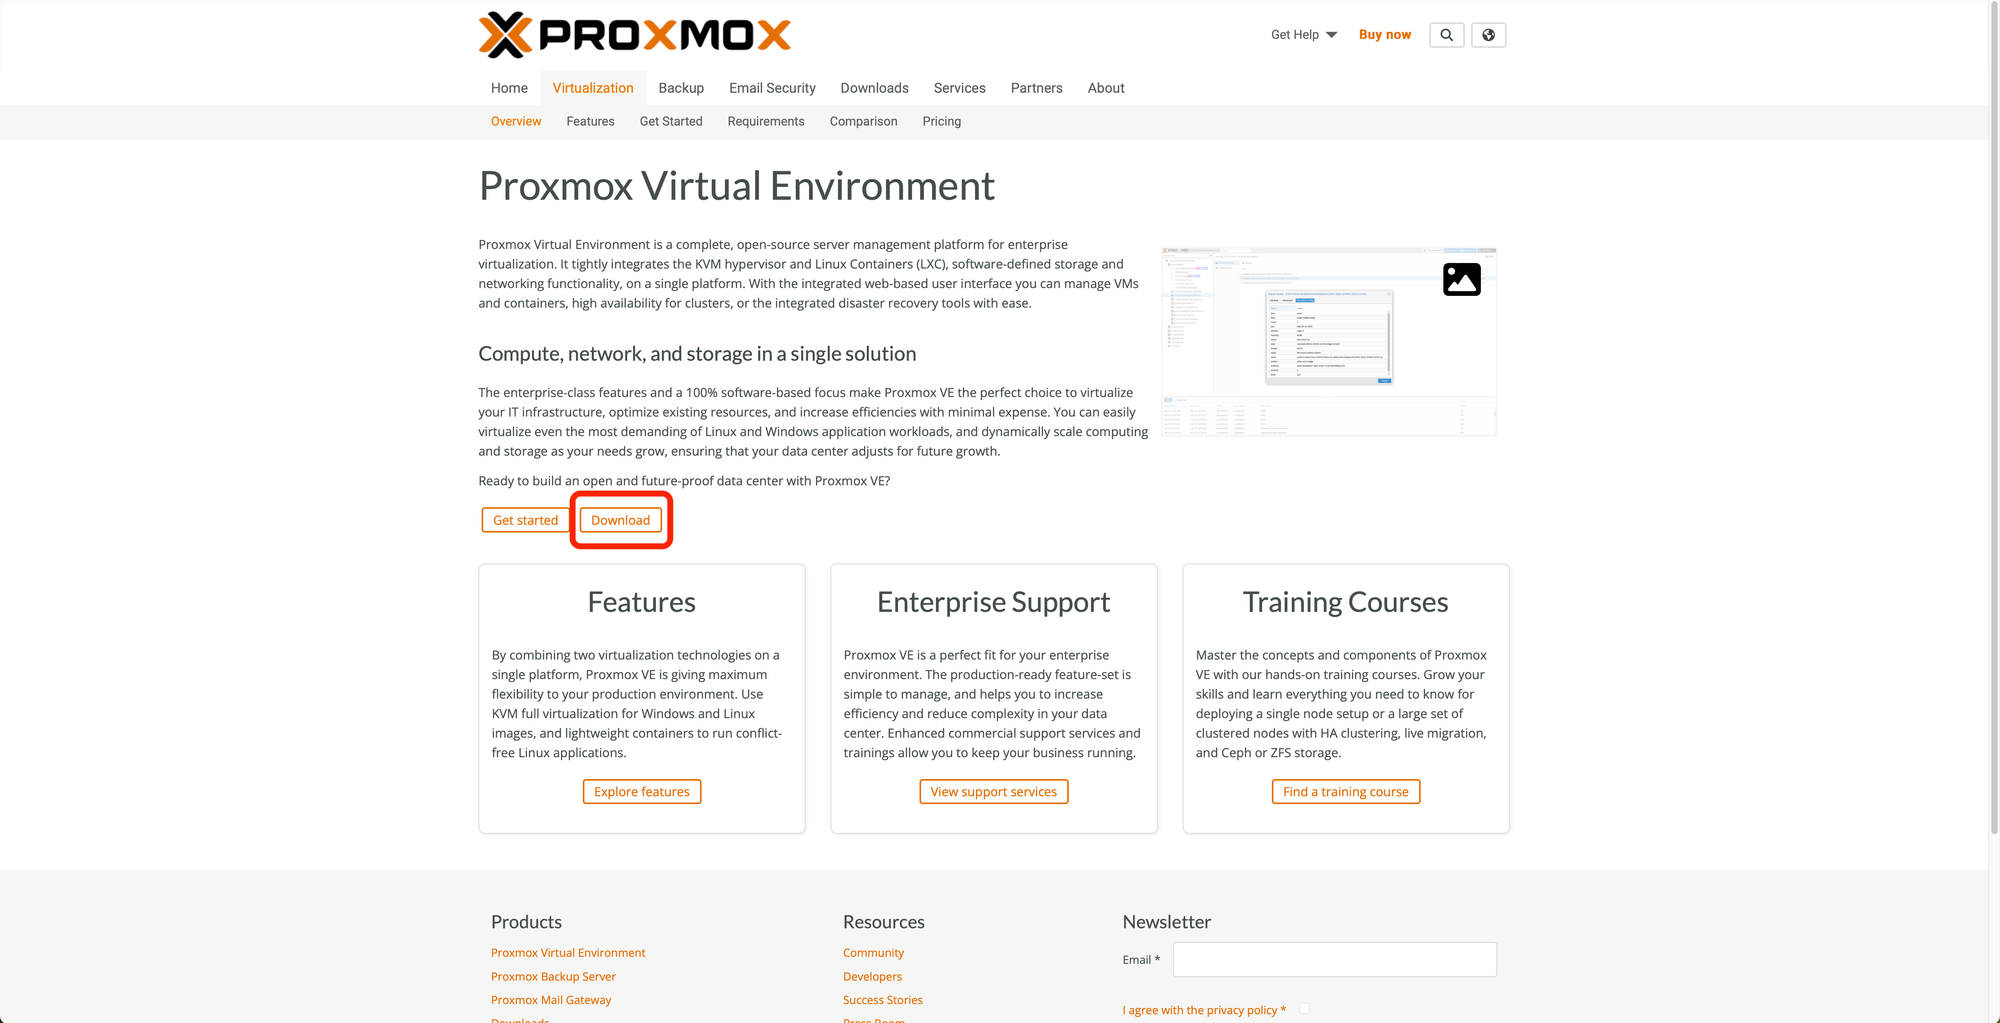 pagina web de Proxmox ve para acceder a la pagina de descargas de la ISO